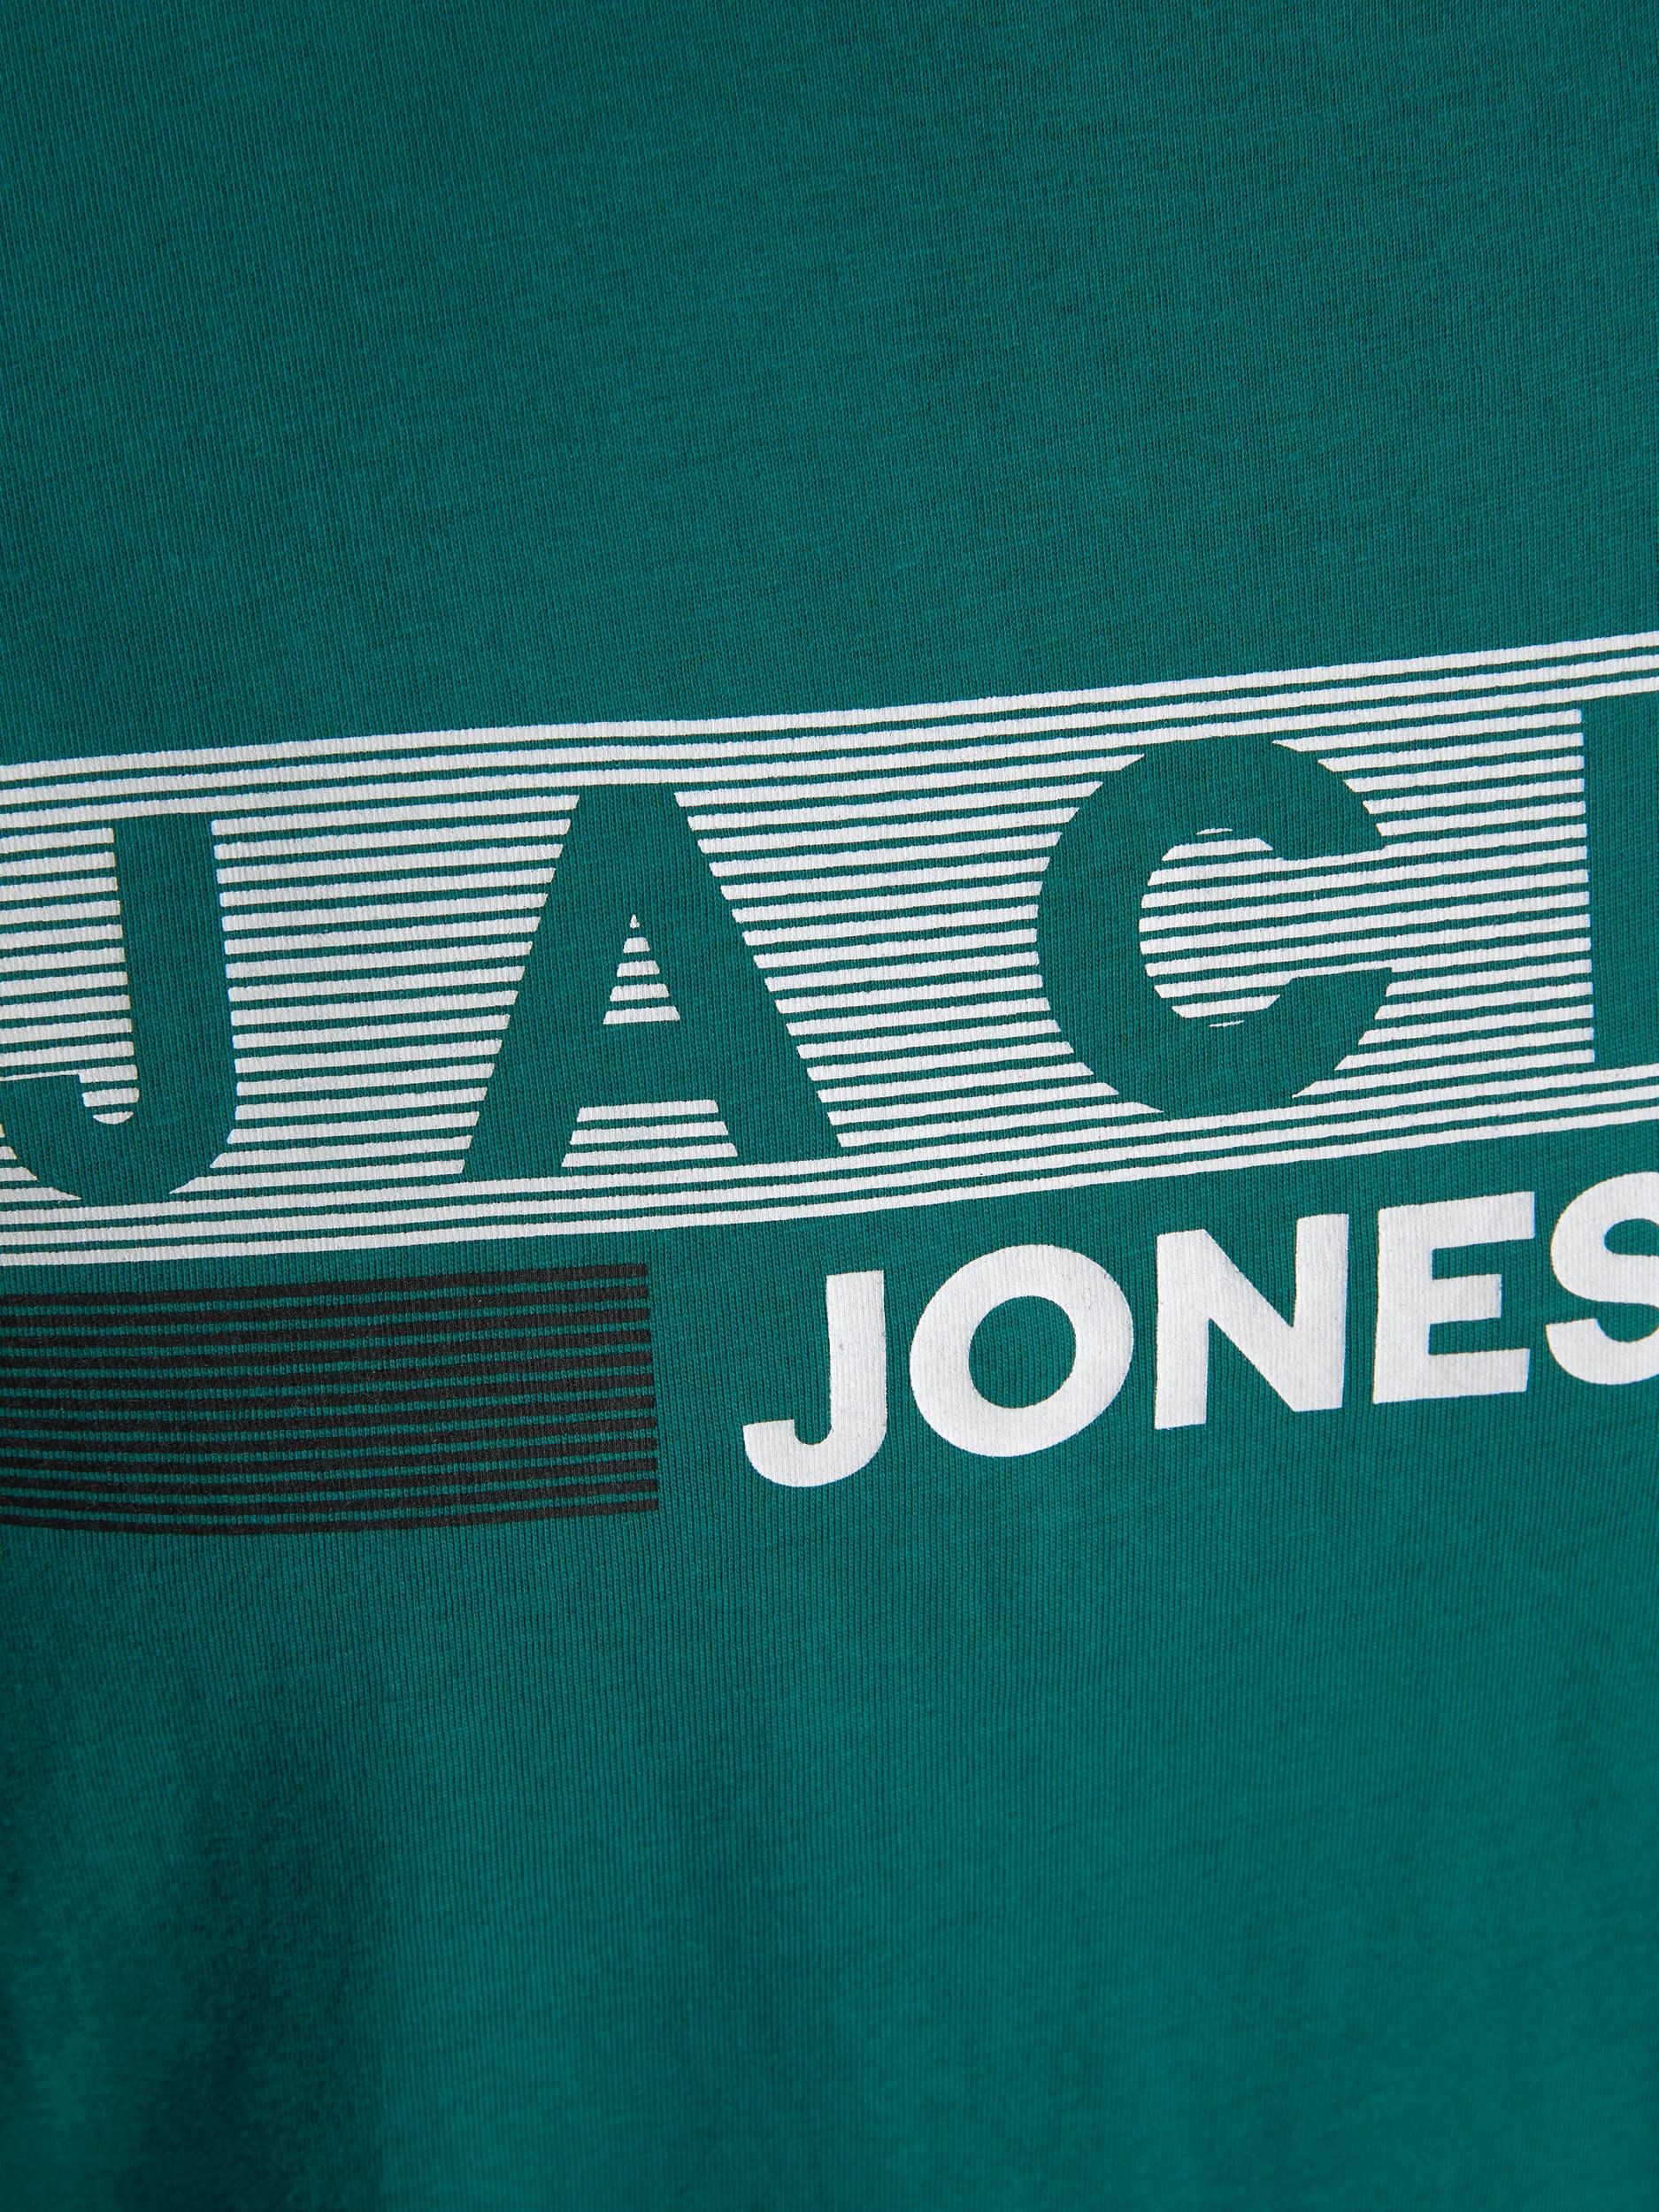 Jack Jones Erkek T-Shirt 12151955 Storm